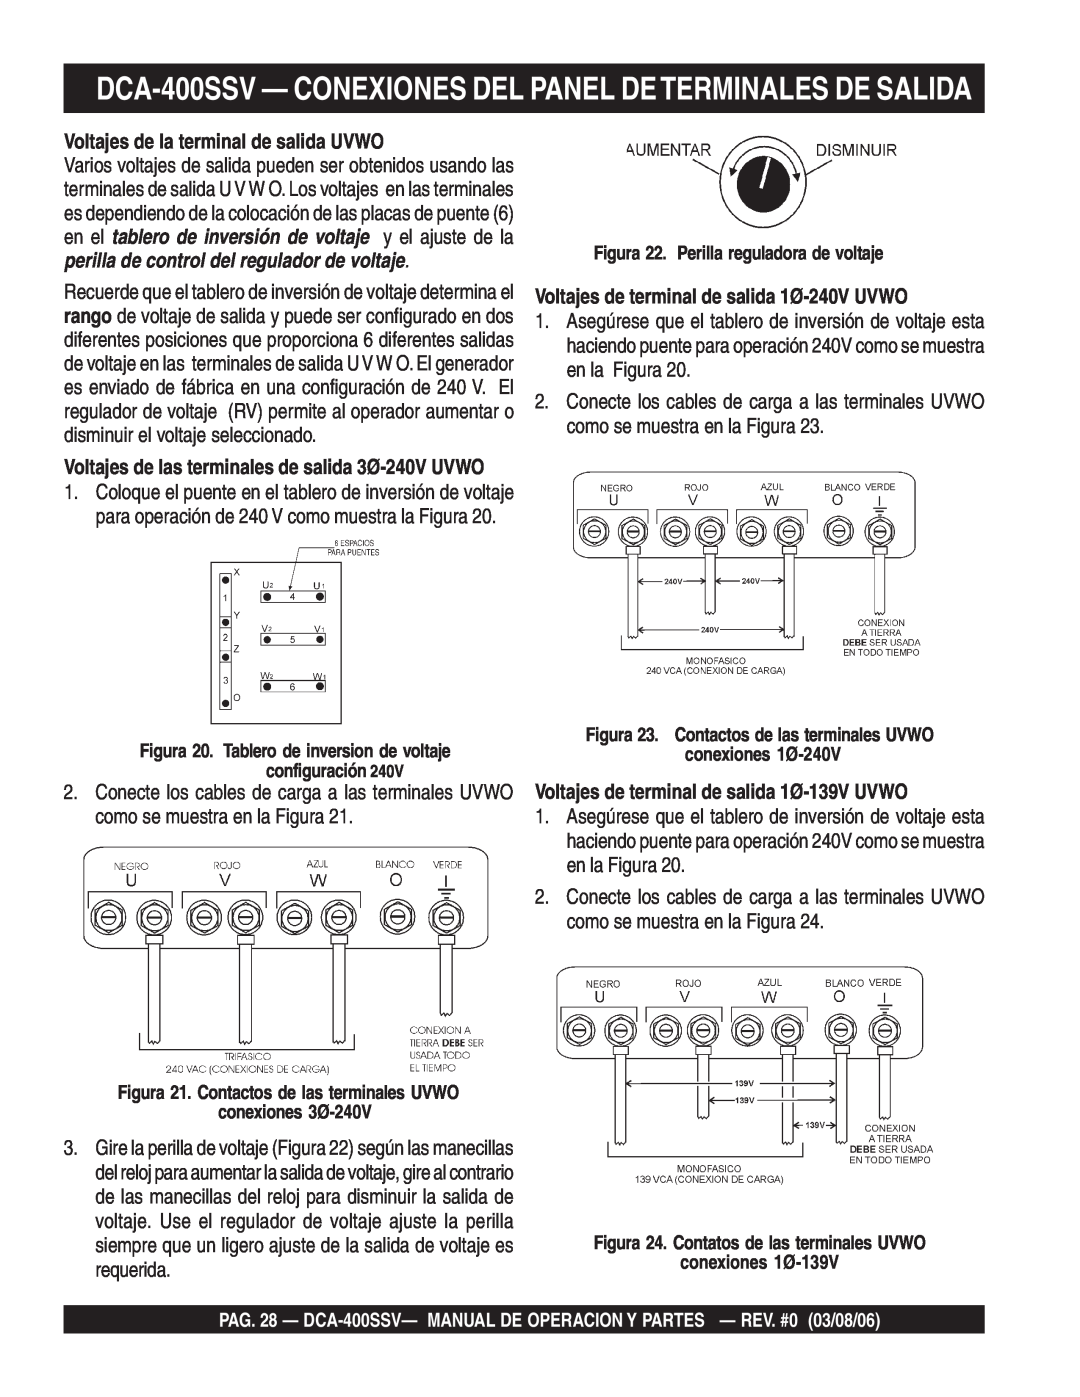 Multiquip DCA-400SSV operation manual Voltajes de la terminal de salida UVWO, Voltajes de terminal de salida 1Ø-240VUVWO 